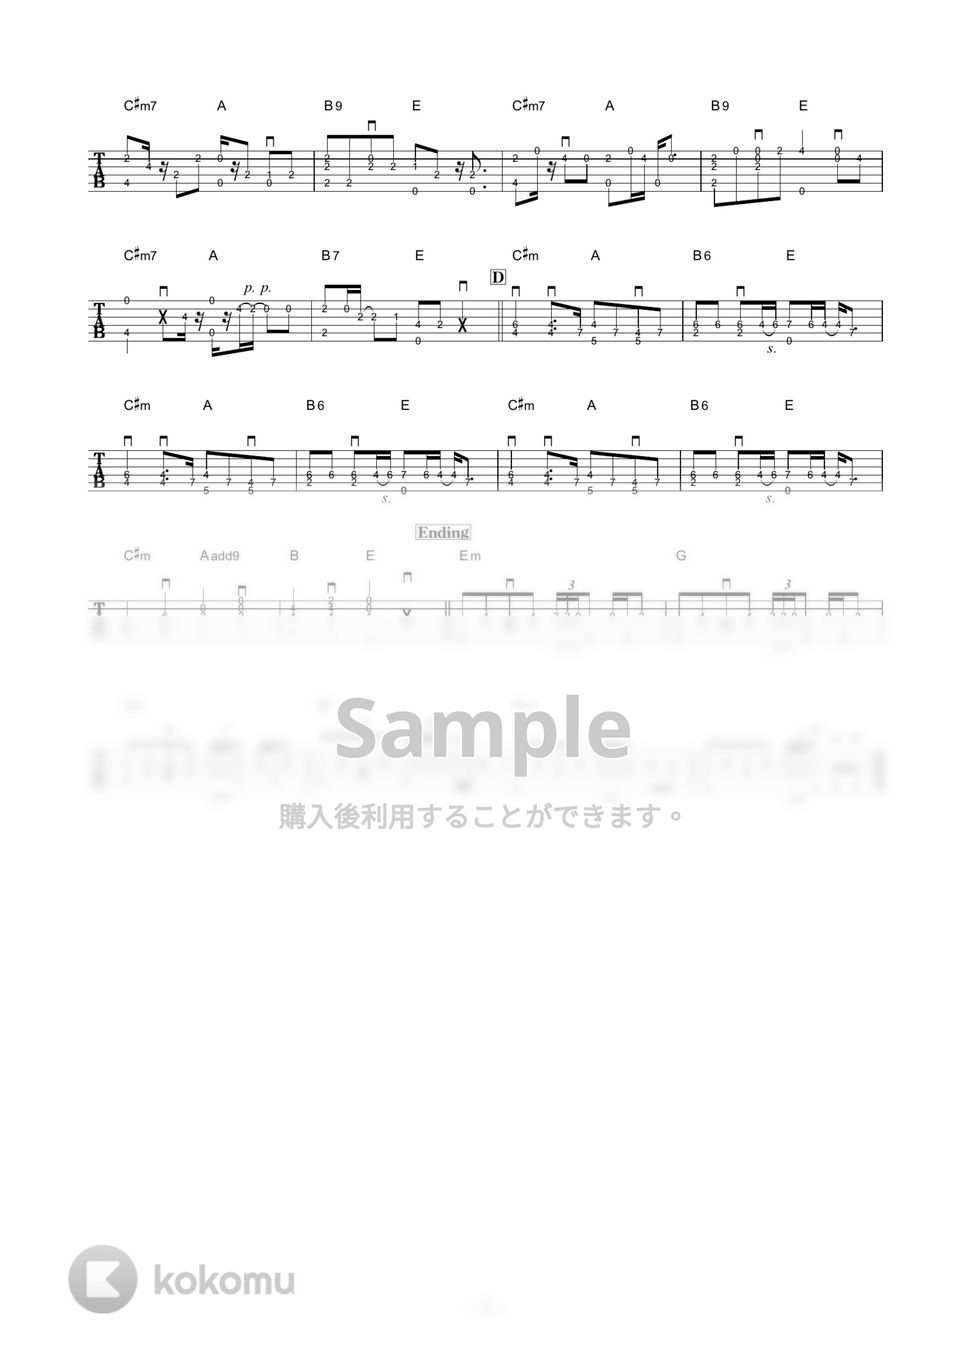 米津玄師 - LOSER (ソロギター) by 伴奏屋TAB譜